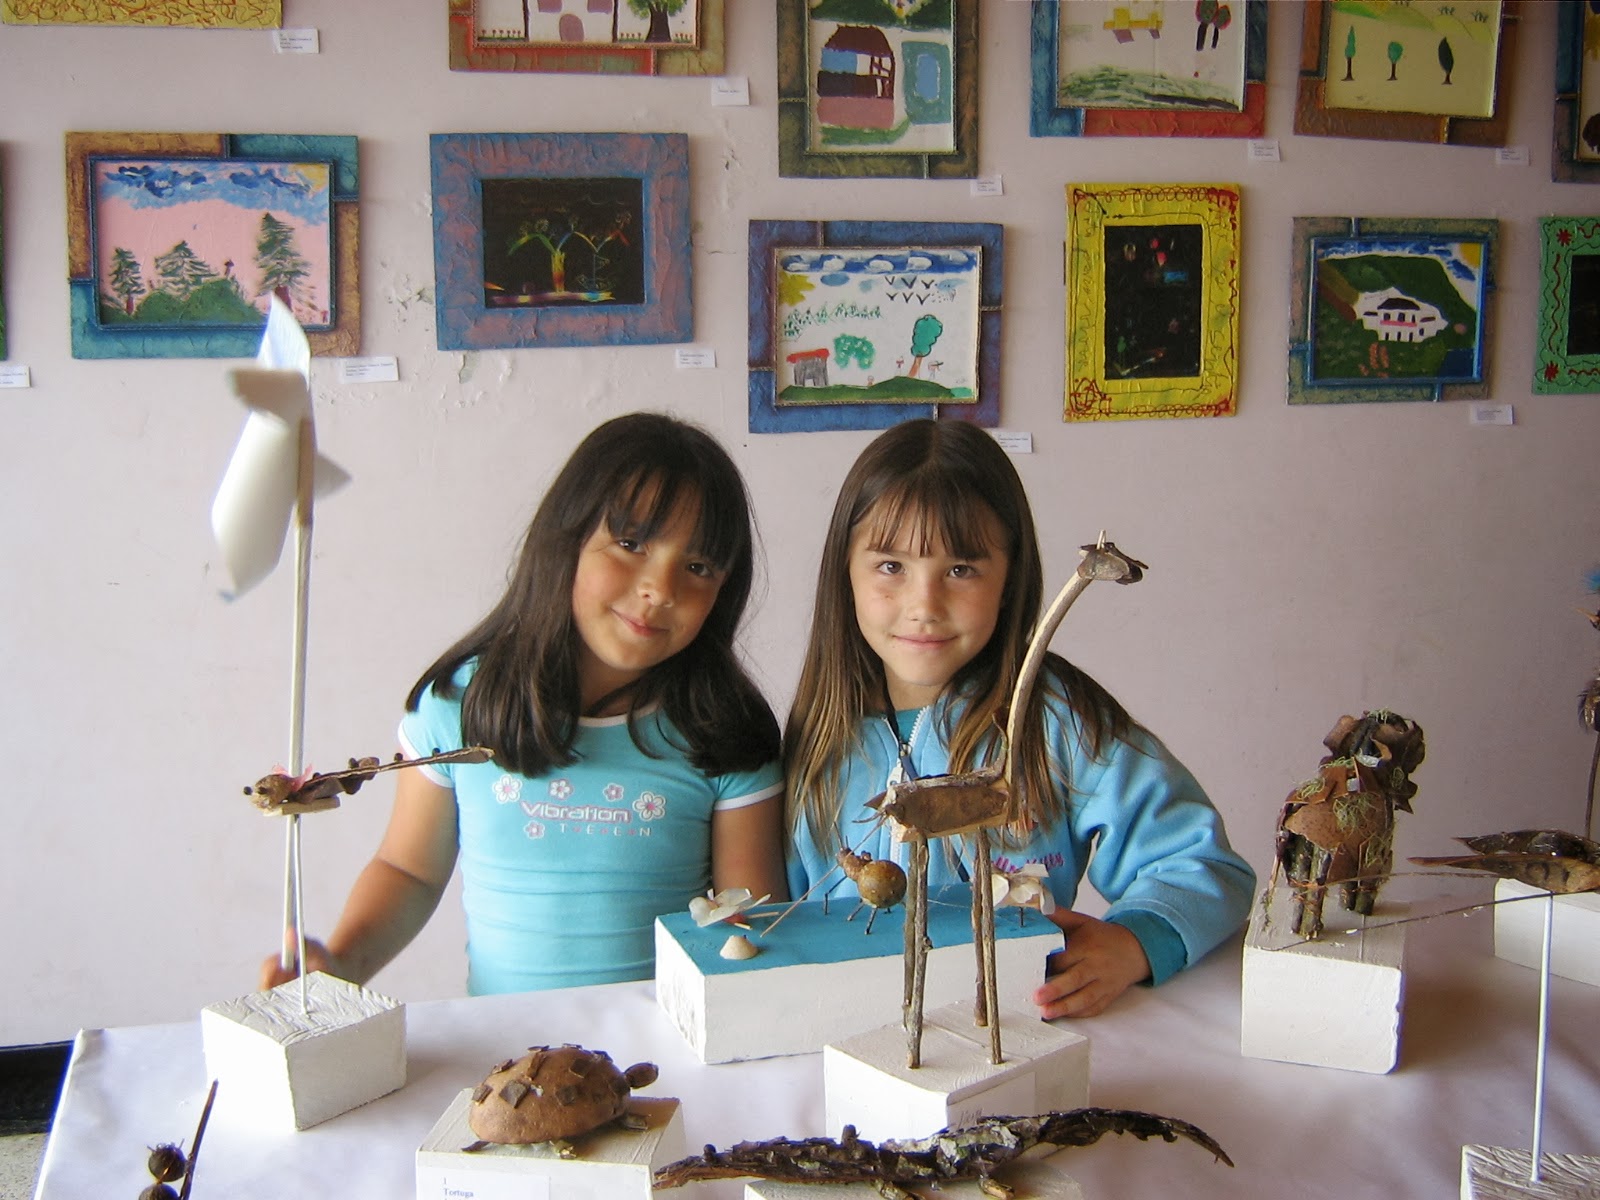 9/12/2006. Fiorella exponiendo sus trabajos en la exposición que se hizo en la casa de la cultura producto de los talleres con la comunidad educativa.